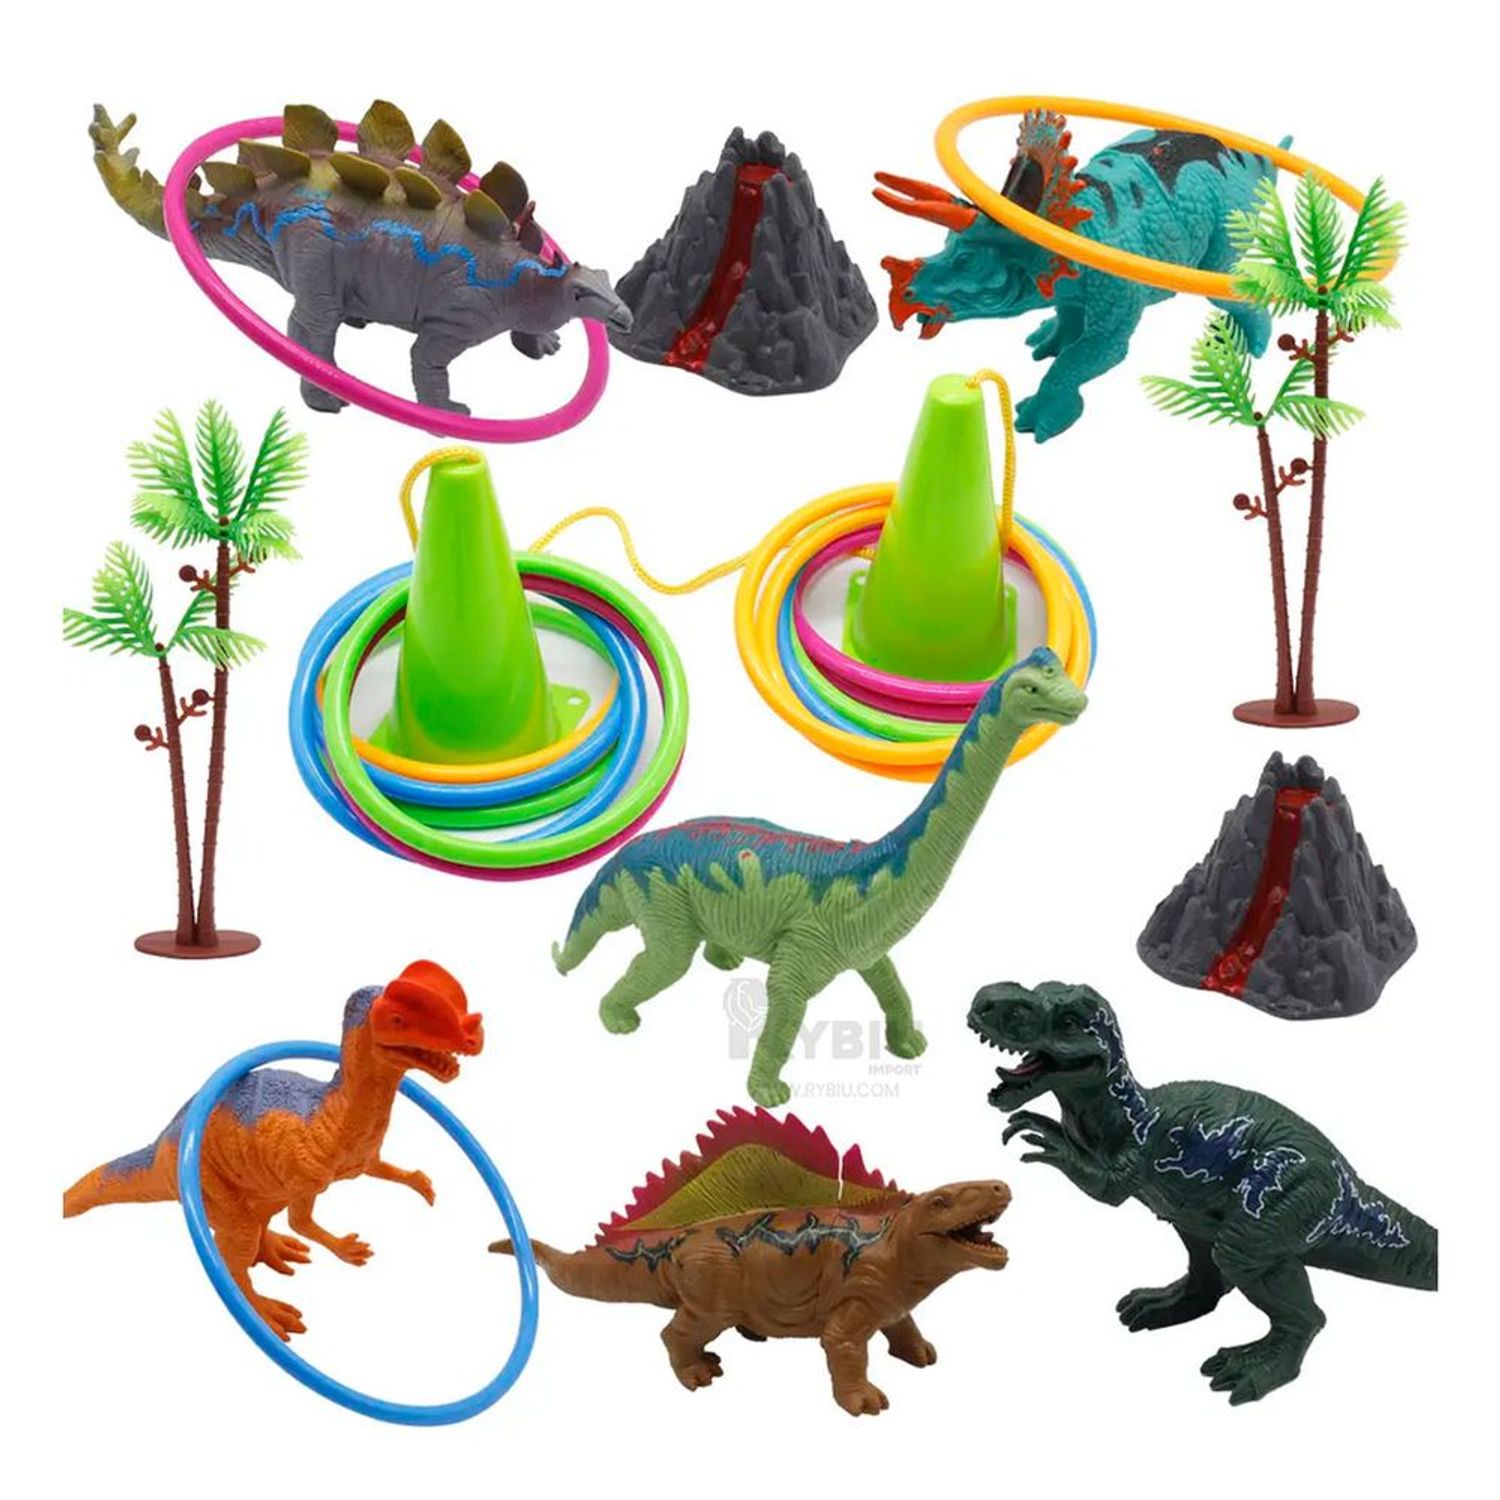 Desarmar juguetes de dinosaurios para niños 3-5 juguetes de